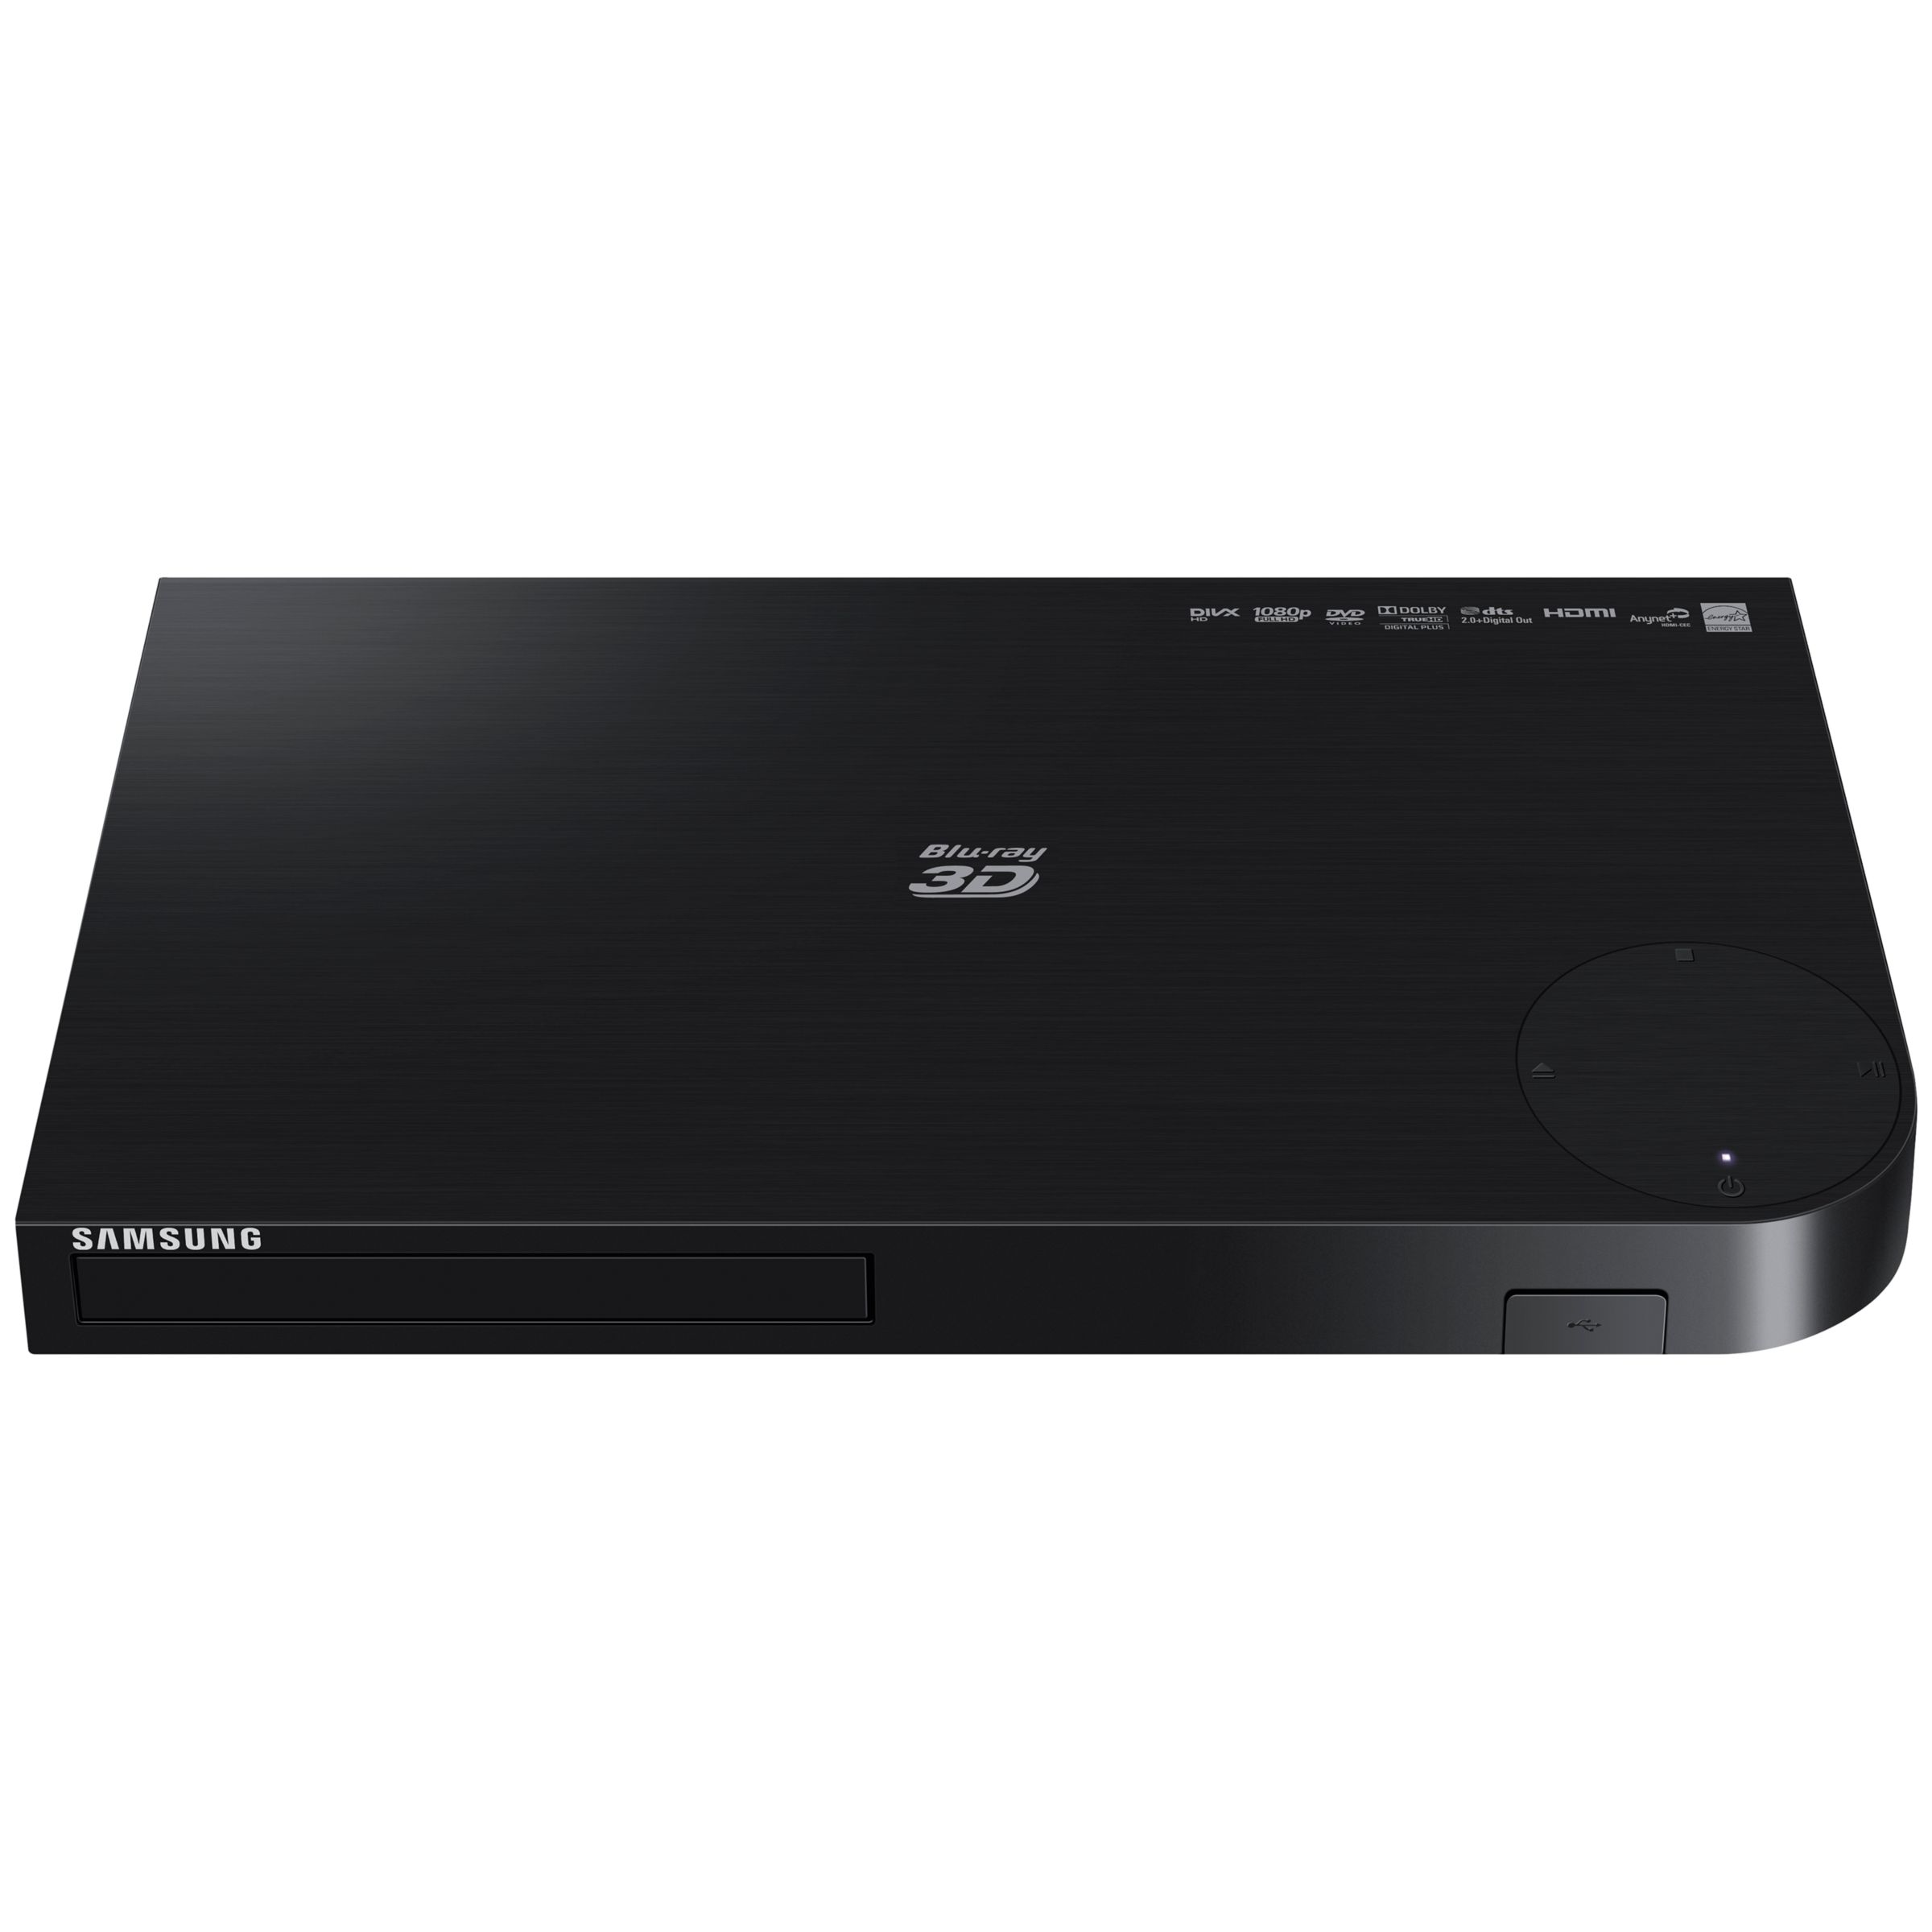 BD-H5500 Smart 3D Blu-ray/DVD Player